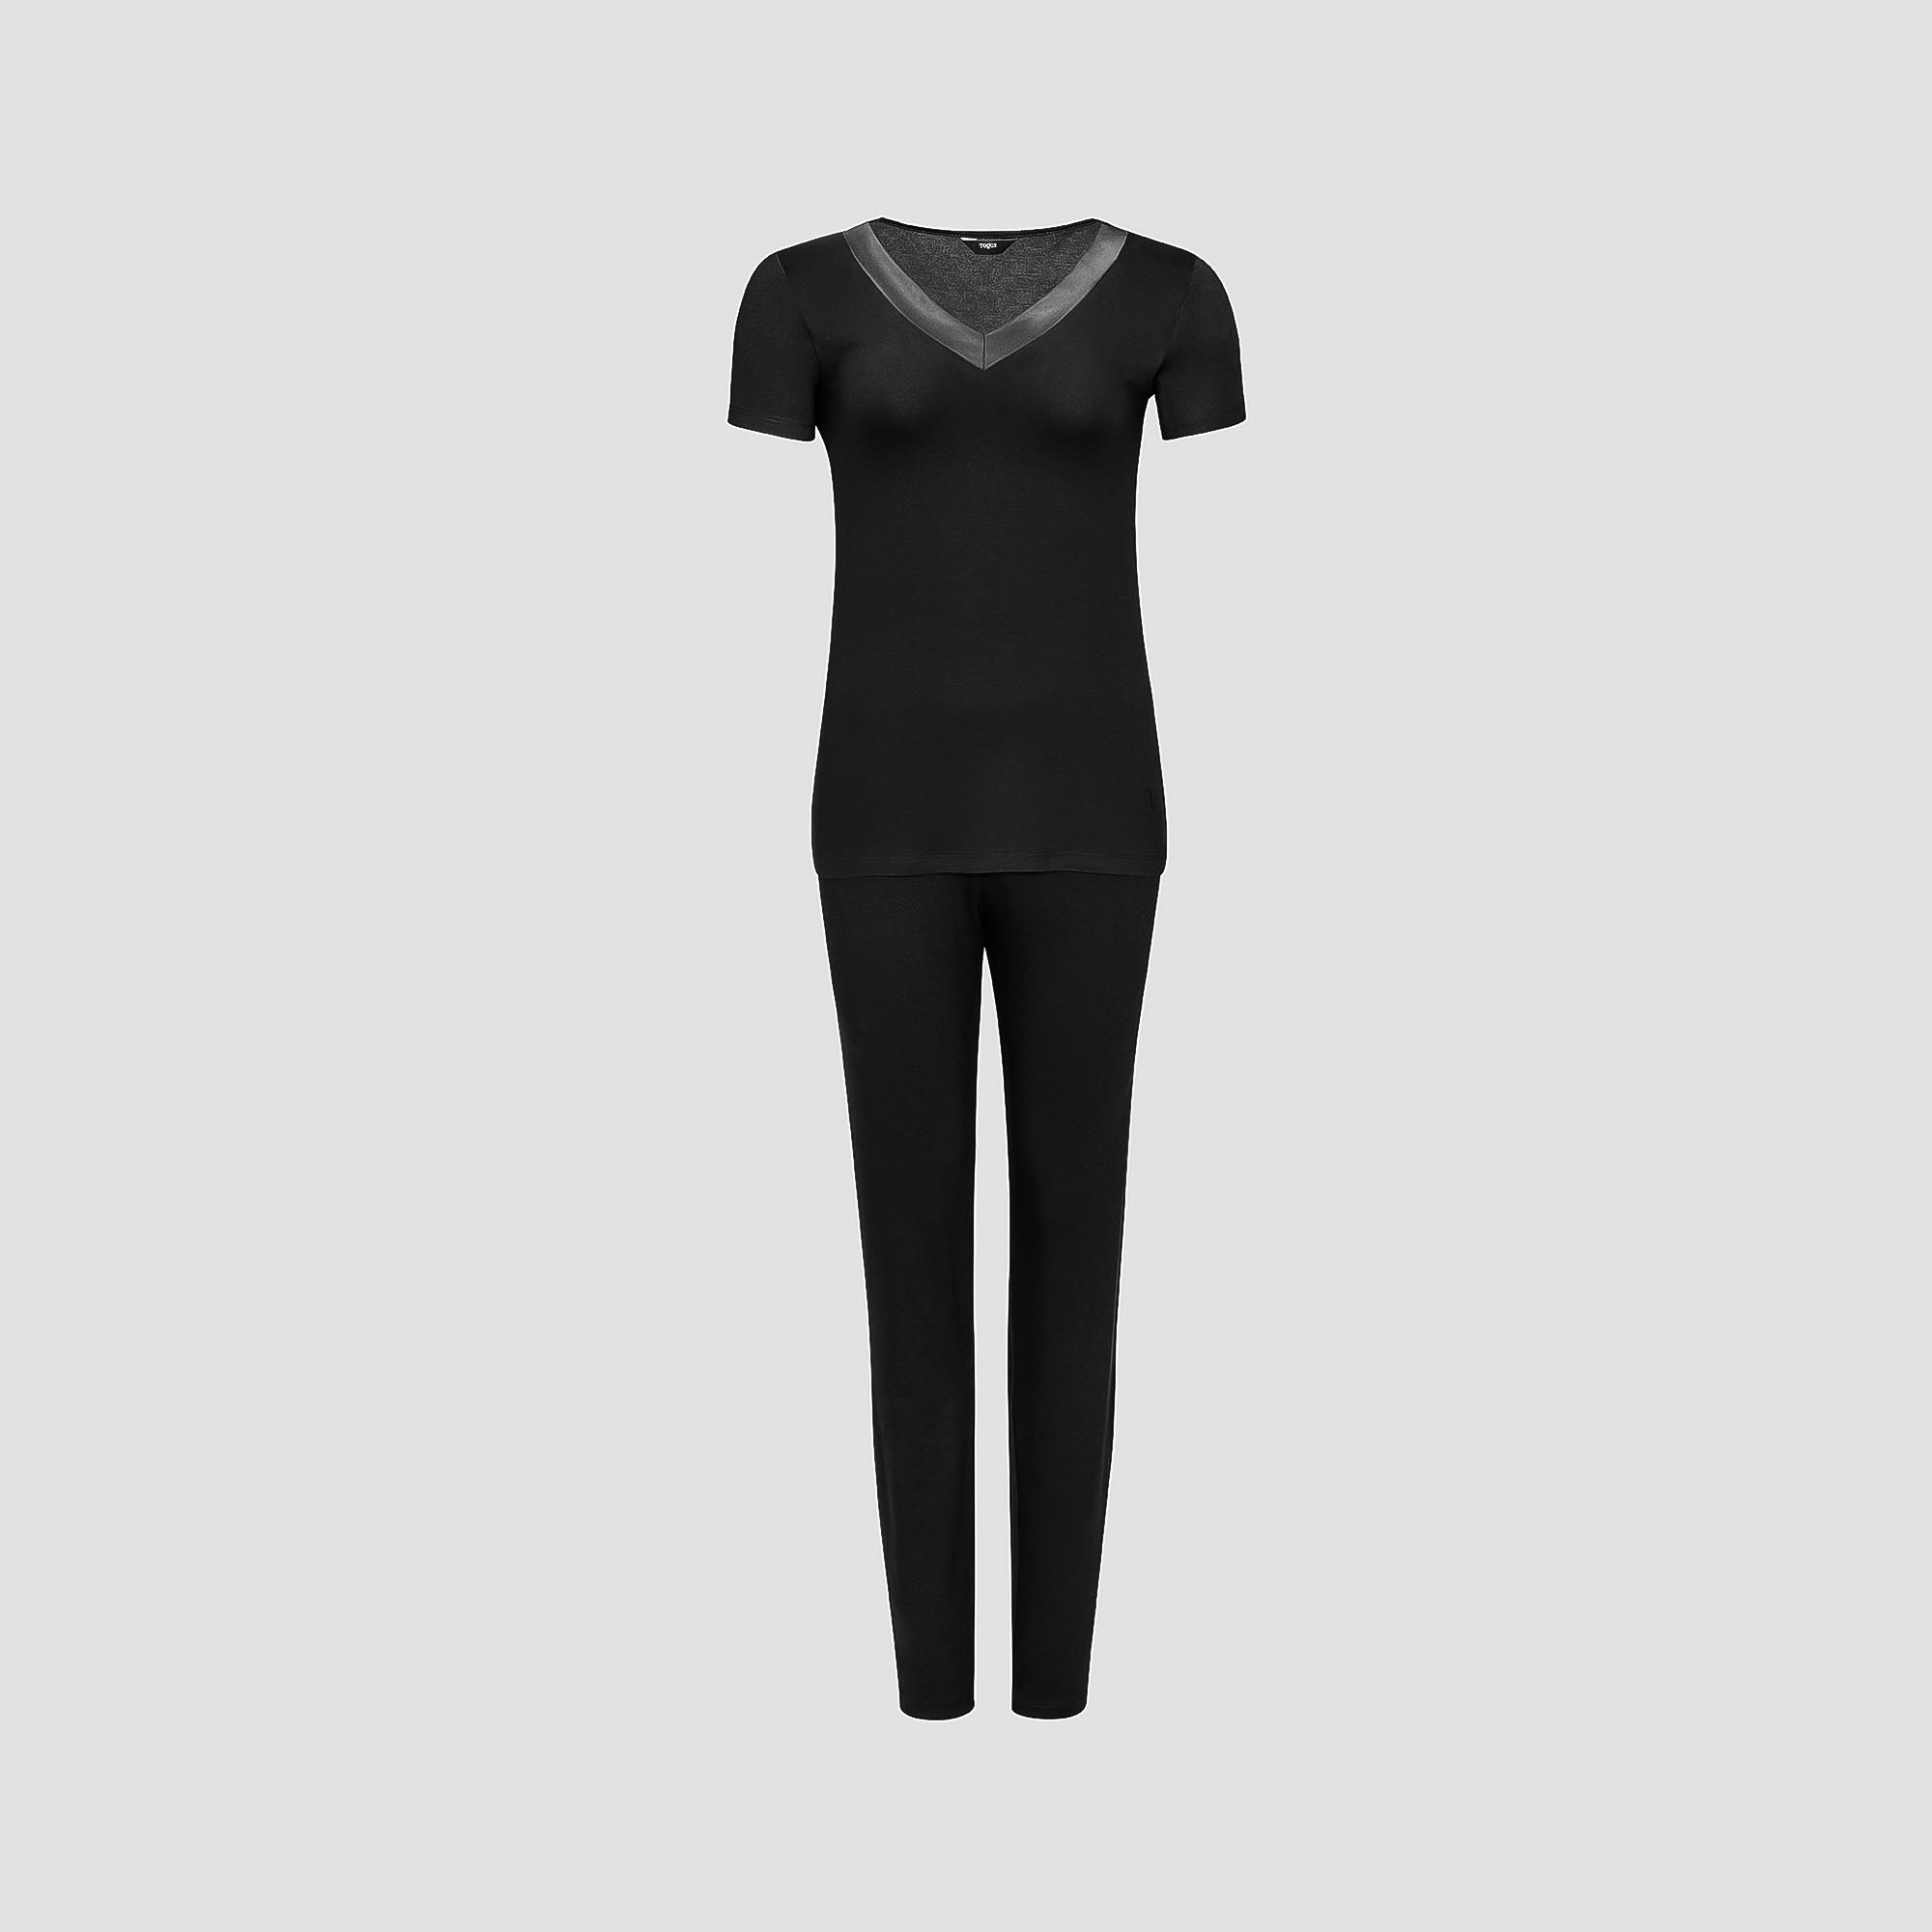 Пижама Togas Ингелла черная женская XL(50) 2 предмета пижама для мальчиков togas teens харпер серо черная 164 см